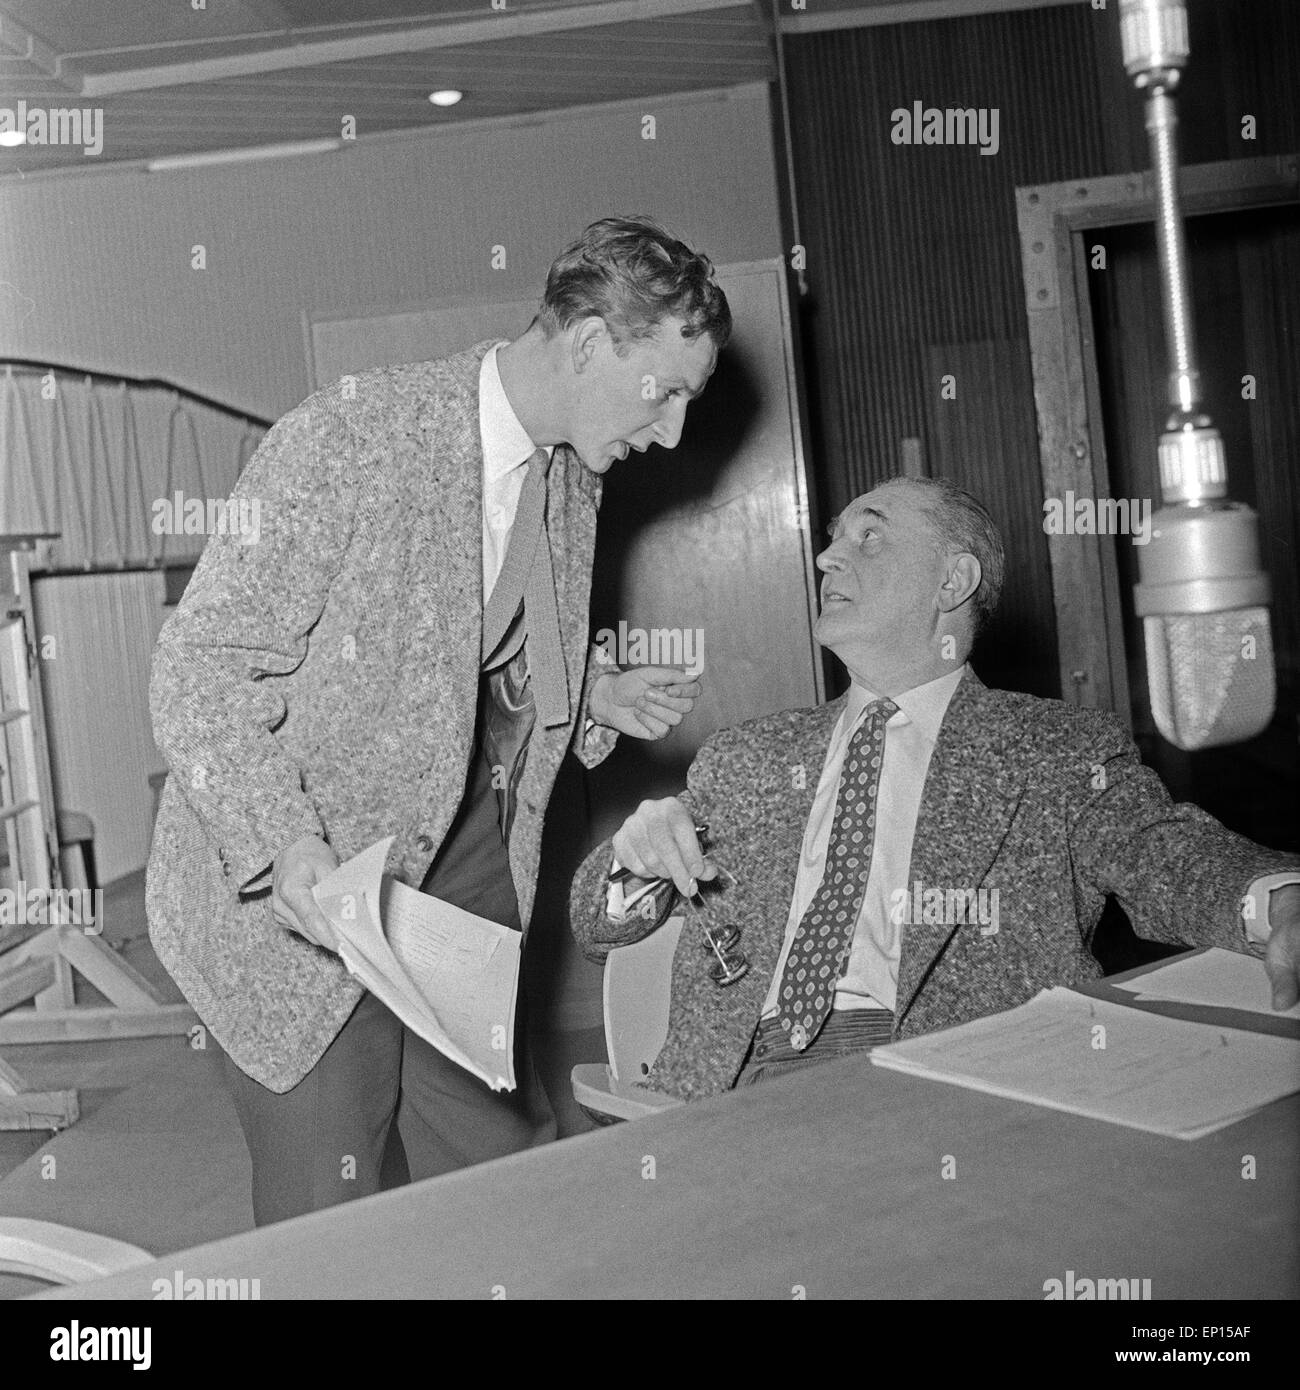 Deutscher Schauspieler Hanns Lothar (links) mit einem Kollegen bei einer NDR Hörspielproduktion, Deutschland 1950er Jahre. Ge Stock Photo